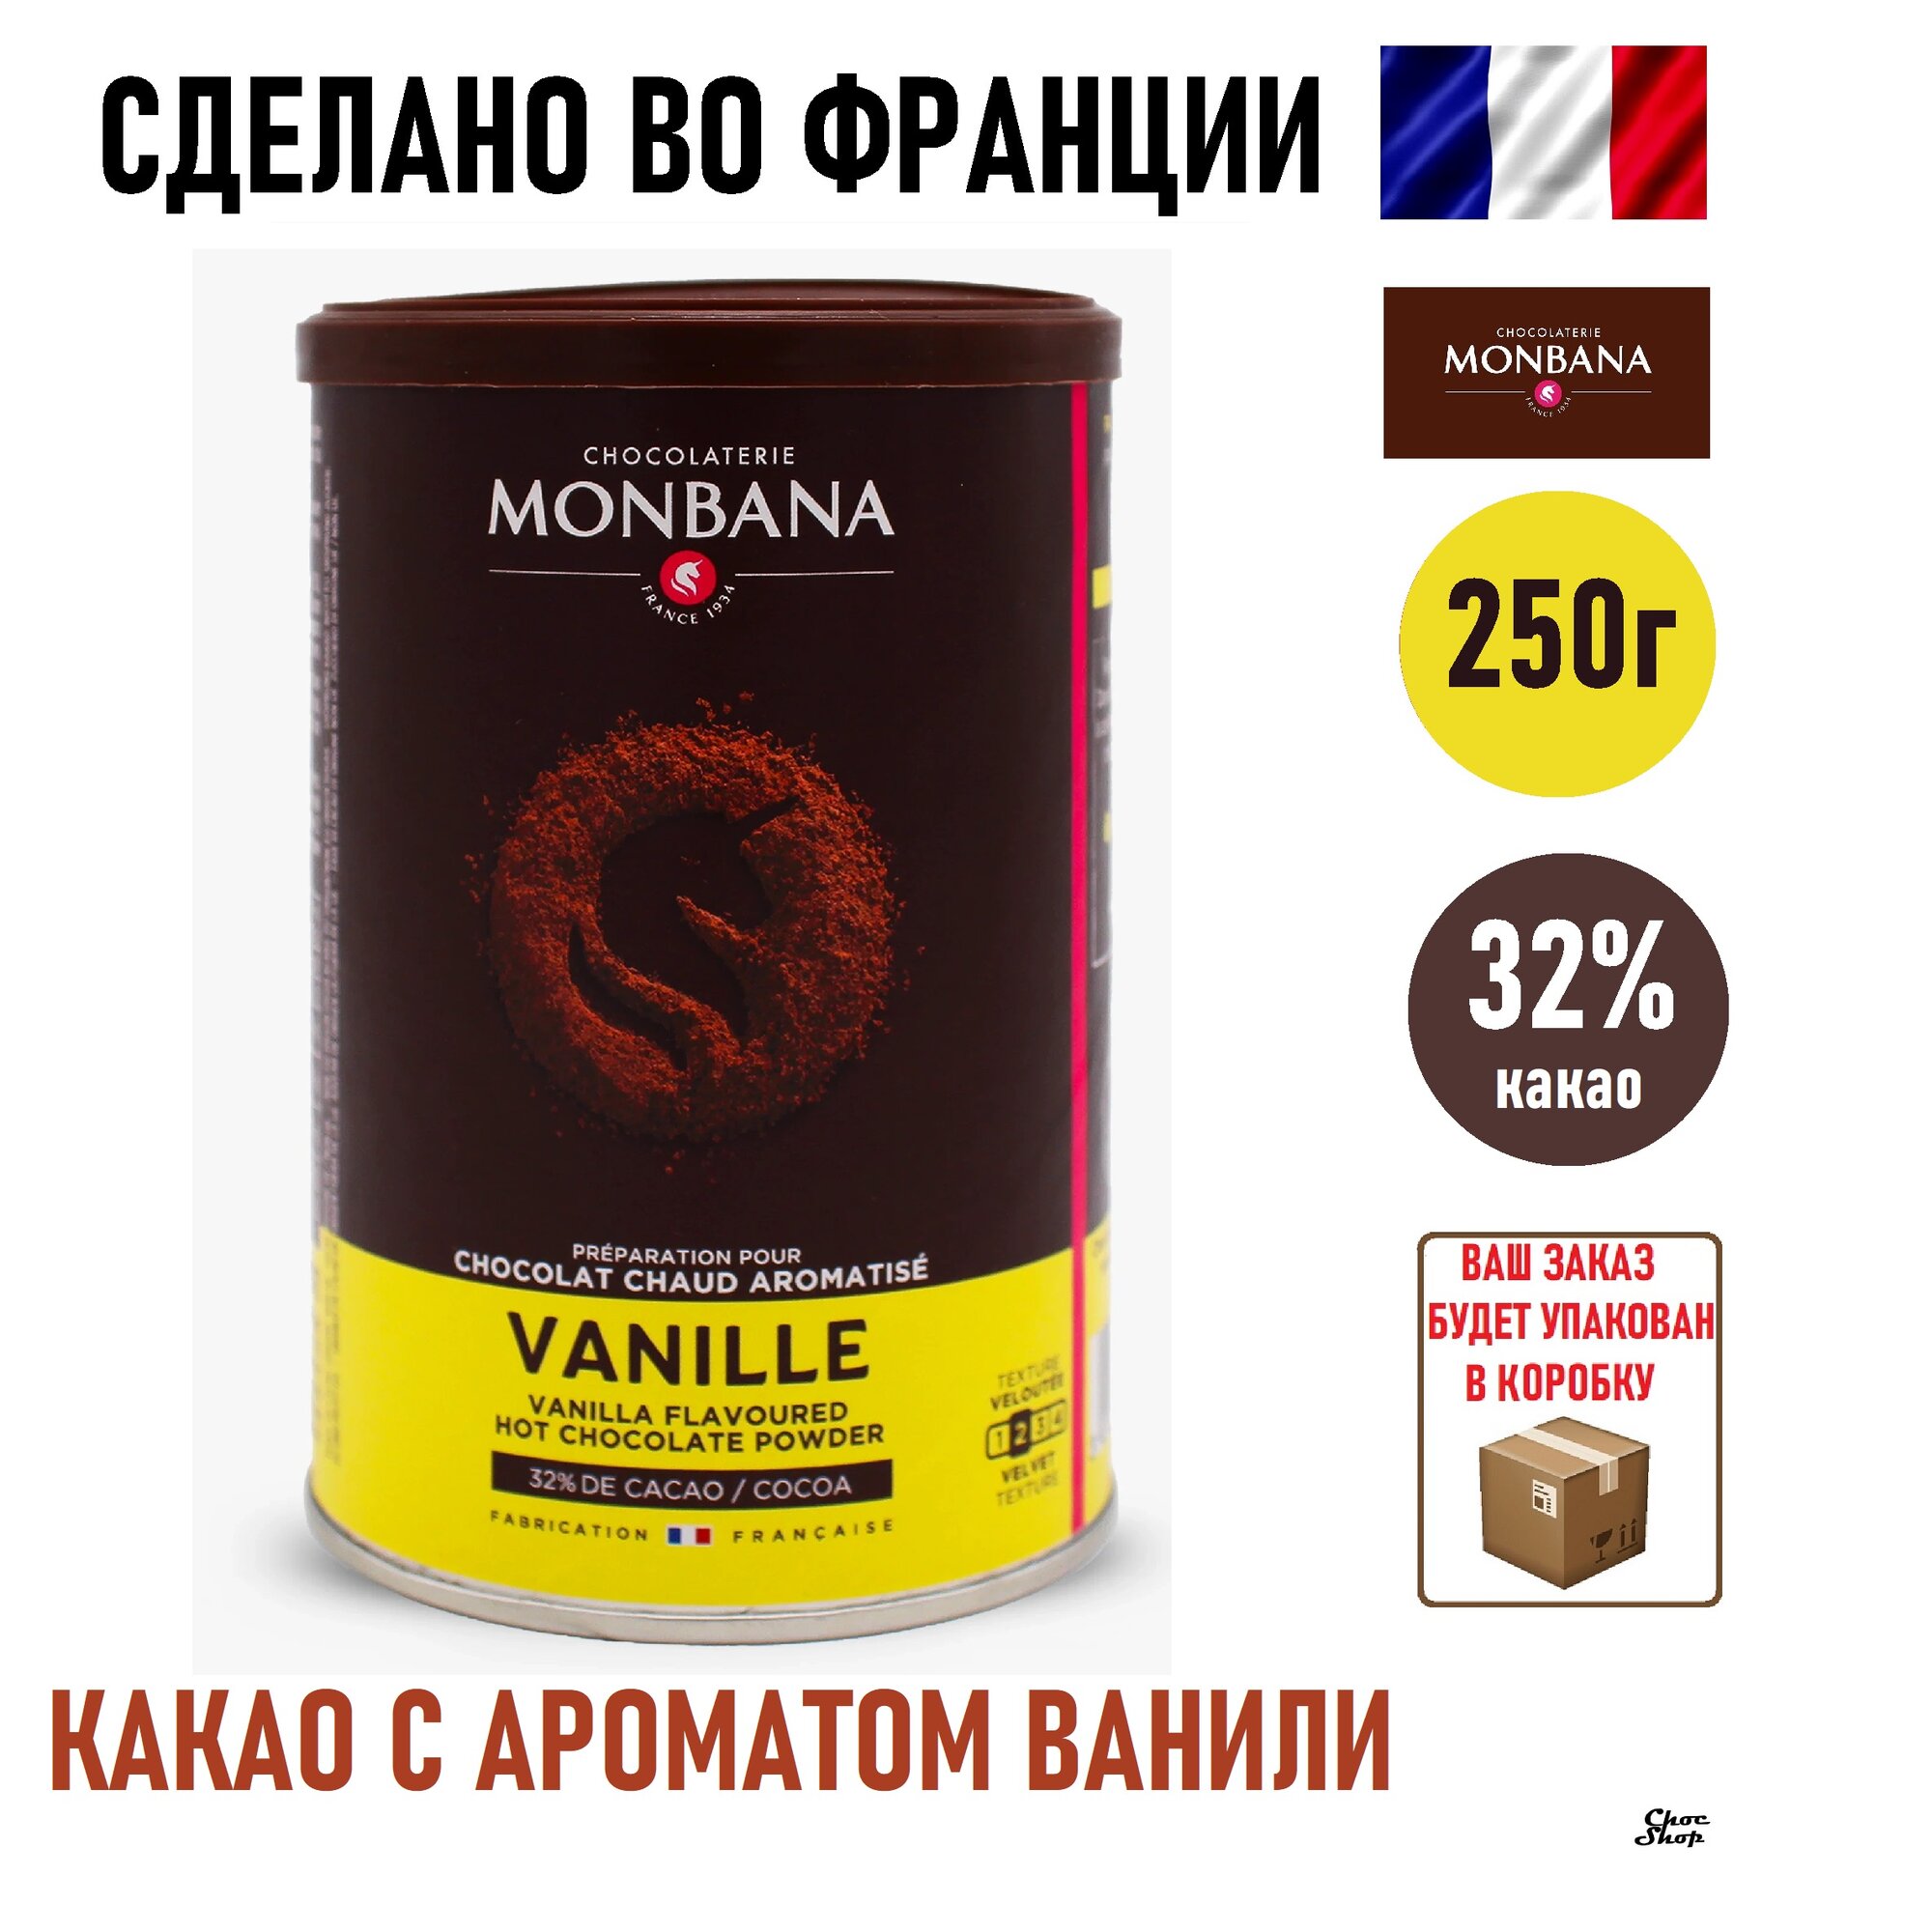 Французский горячий шоколад Monbana с ванилью, какао 32%, нетто 250г